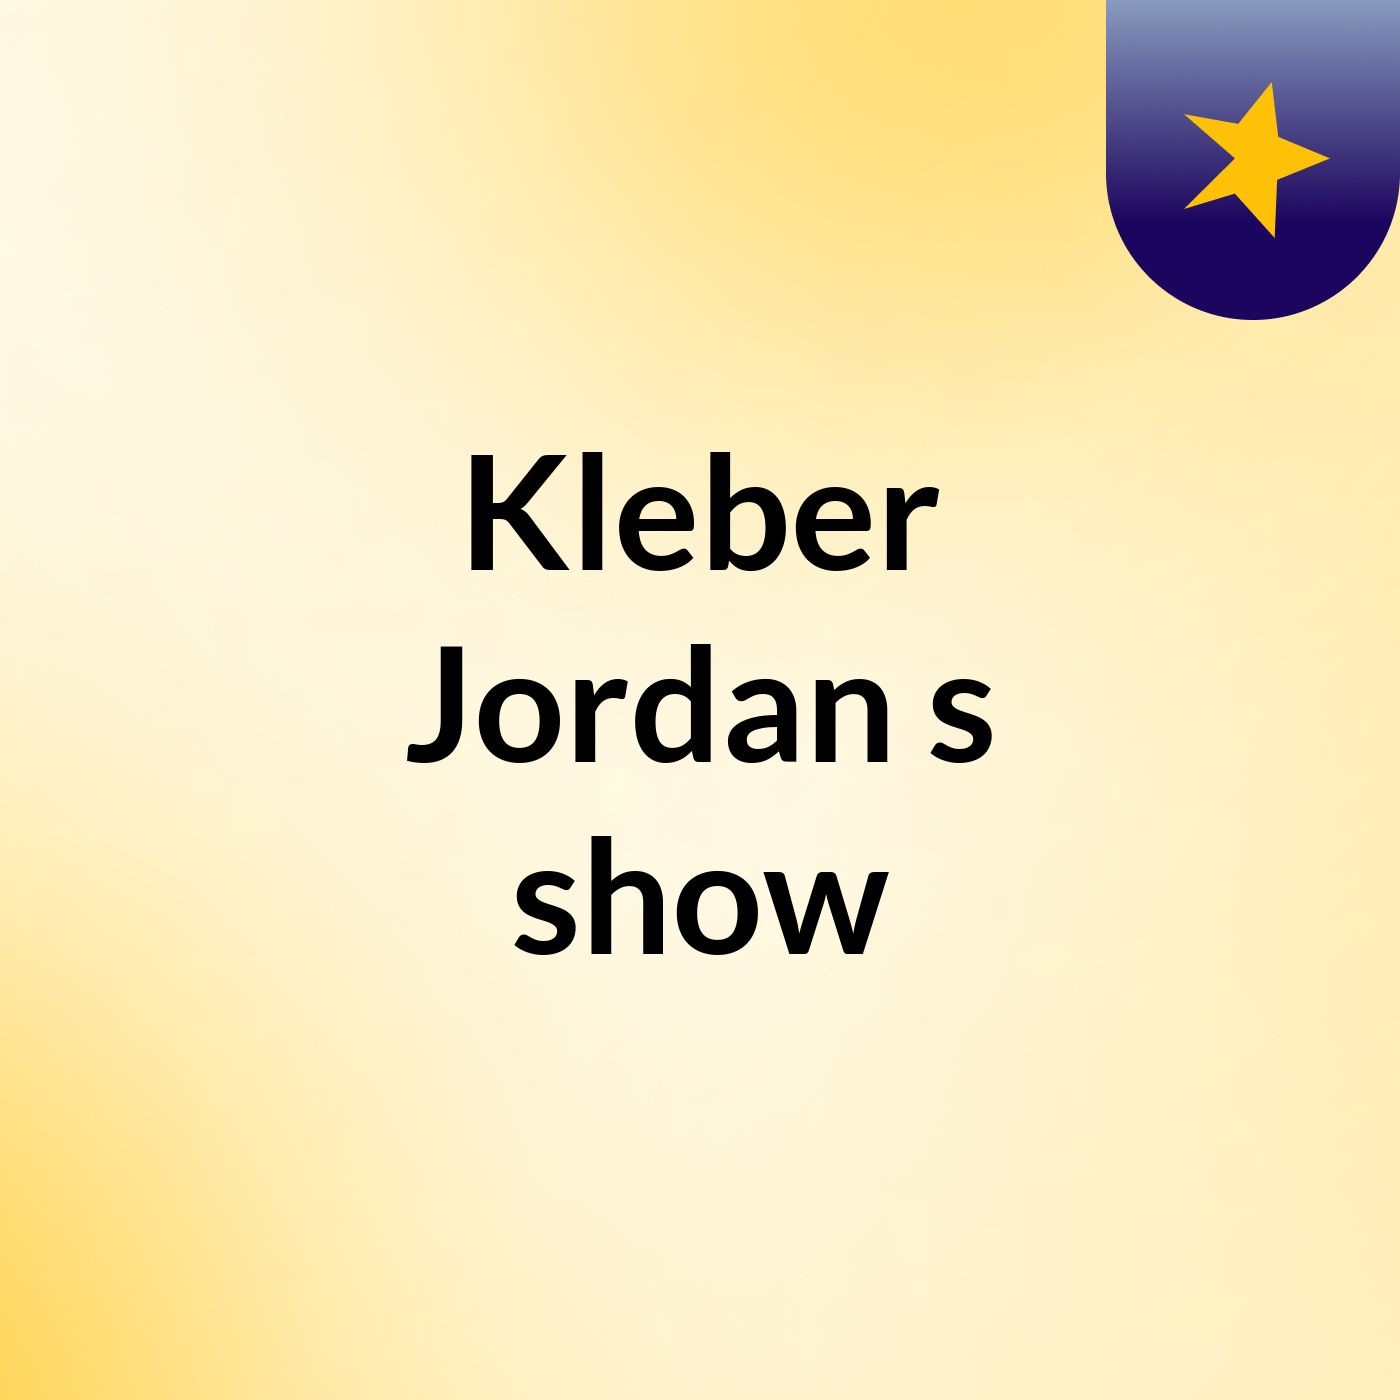 Kleber Jordan's show